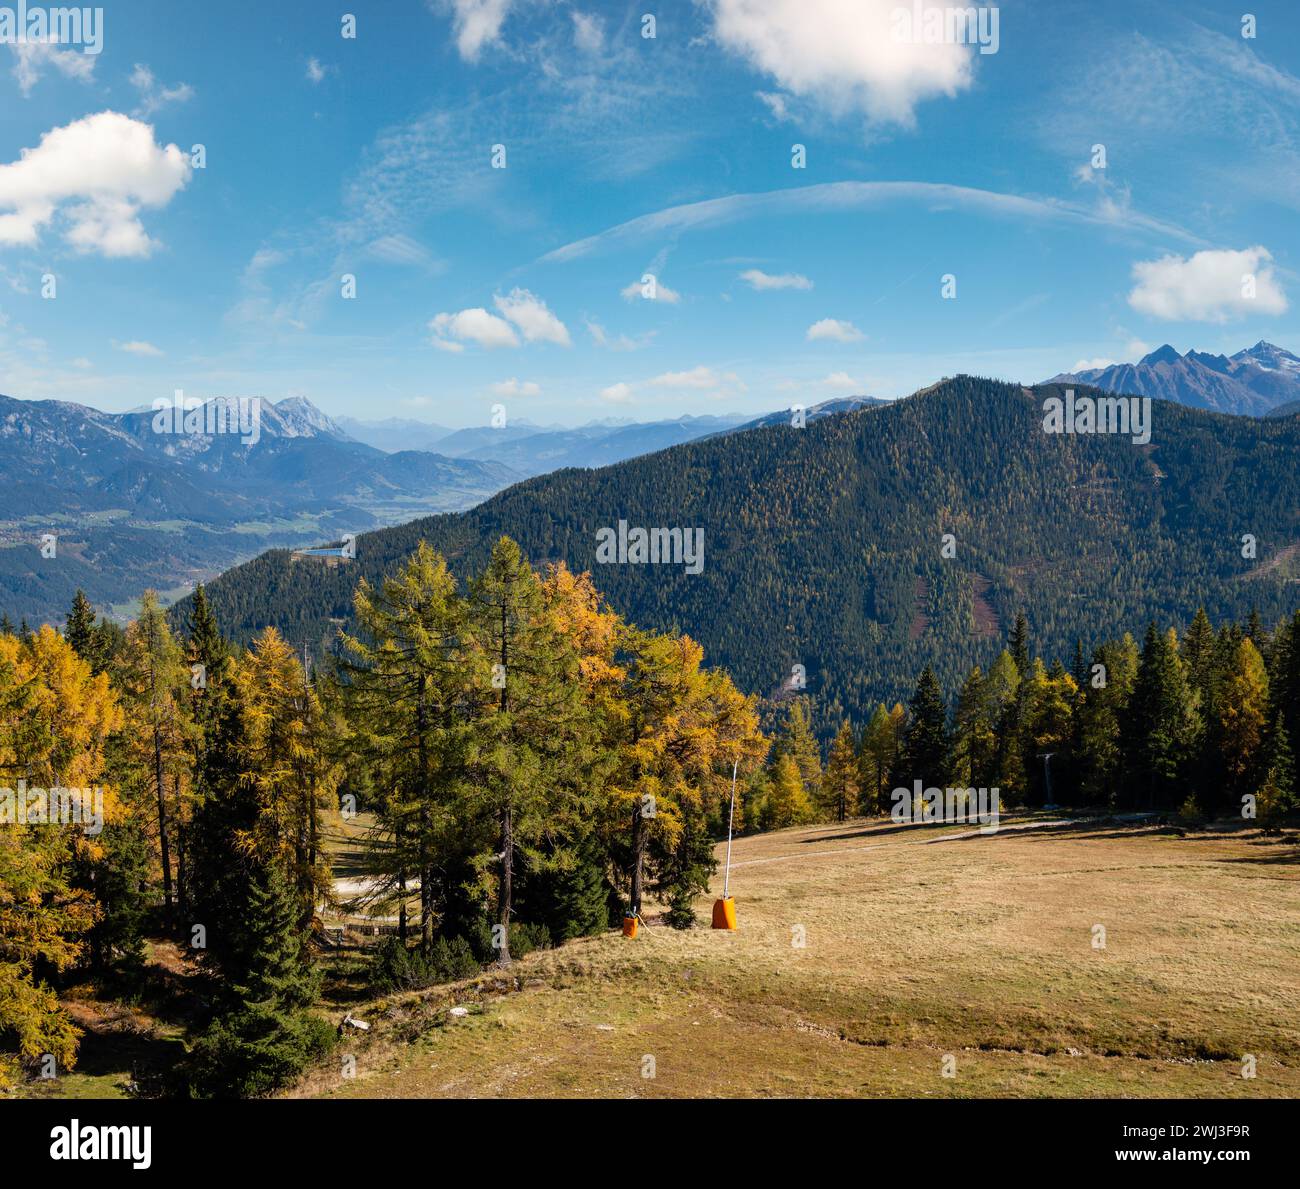 Peaceful autumn Alps mountain view. Reiteralm, Steiermark, Austria. Stock Photo